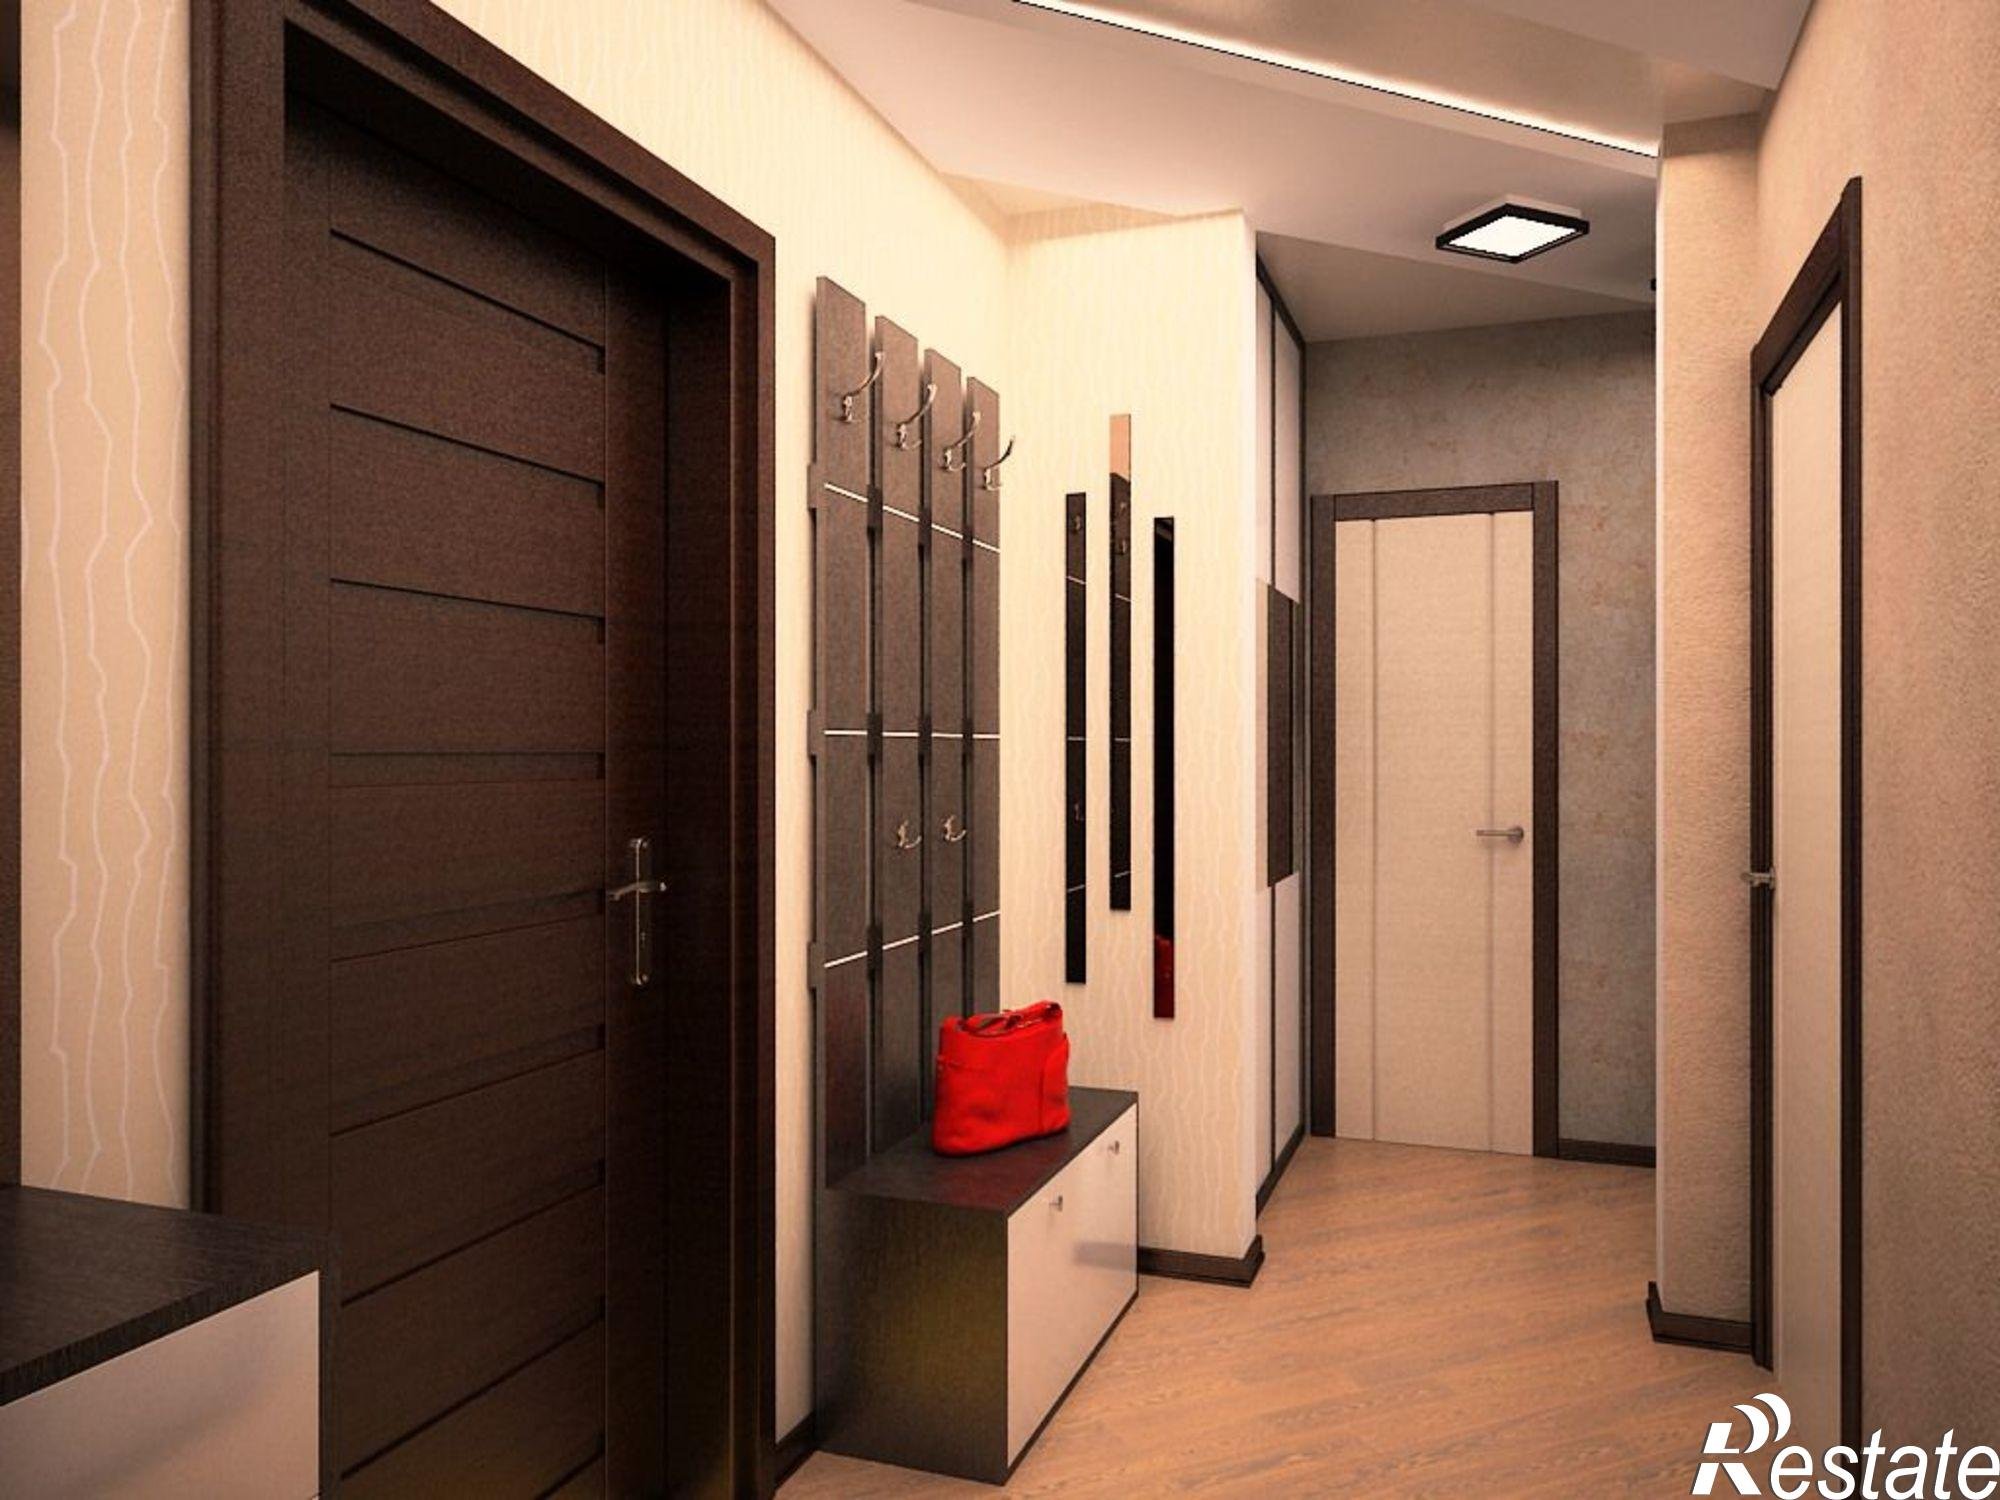 Дизайн узкого коридора в квартире: реальные фото в панельном �доме